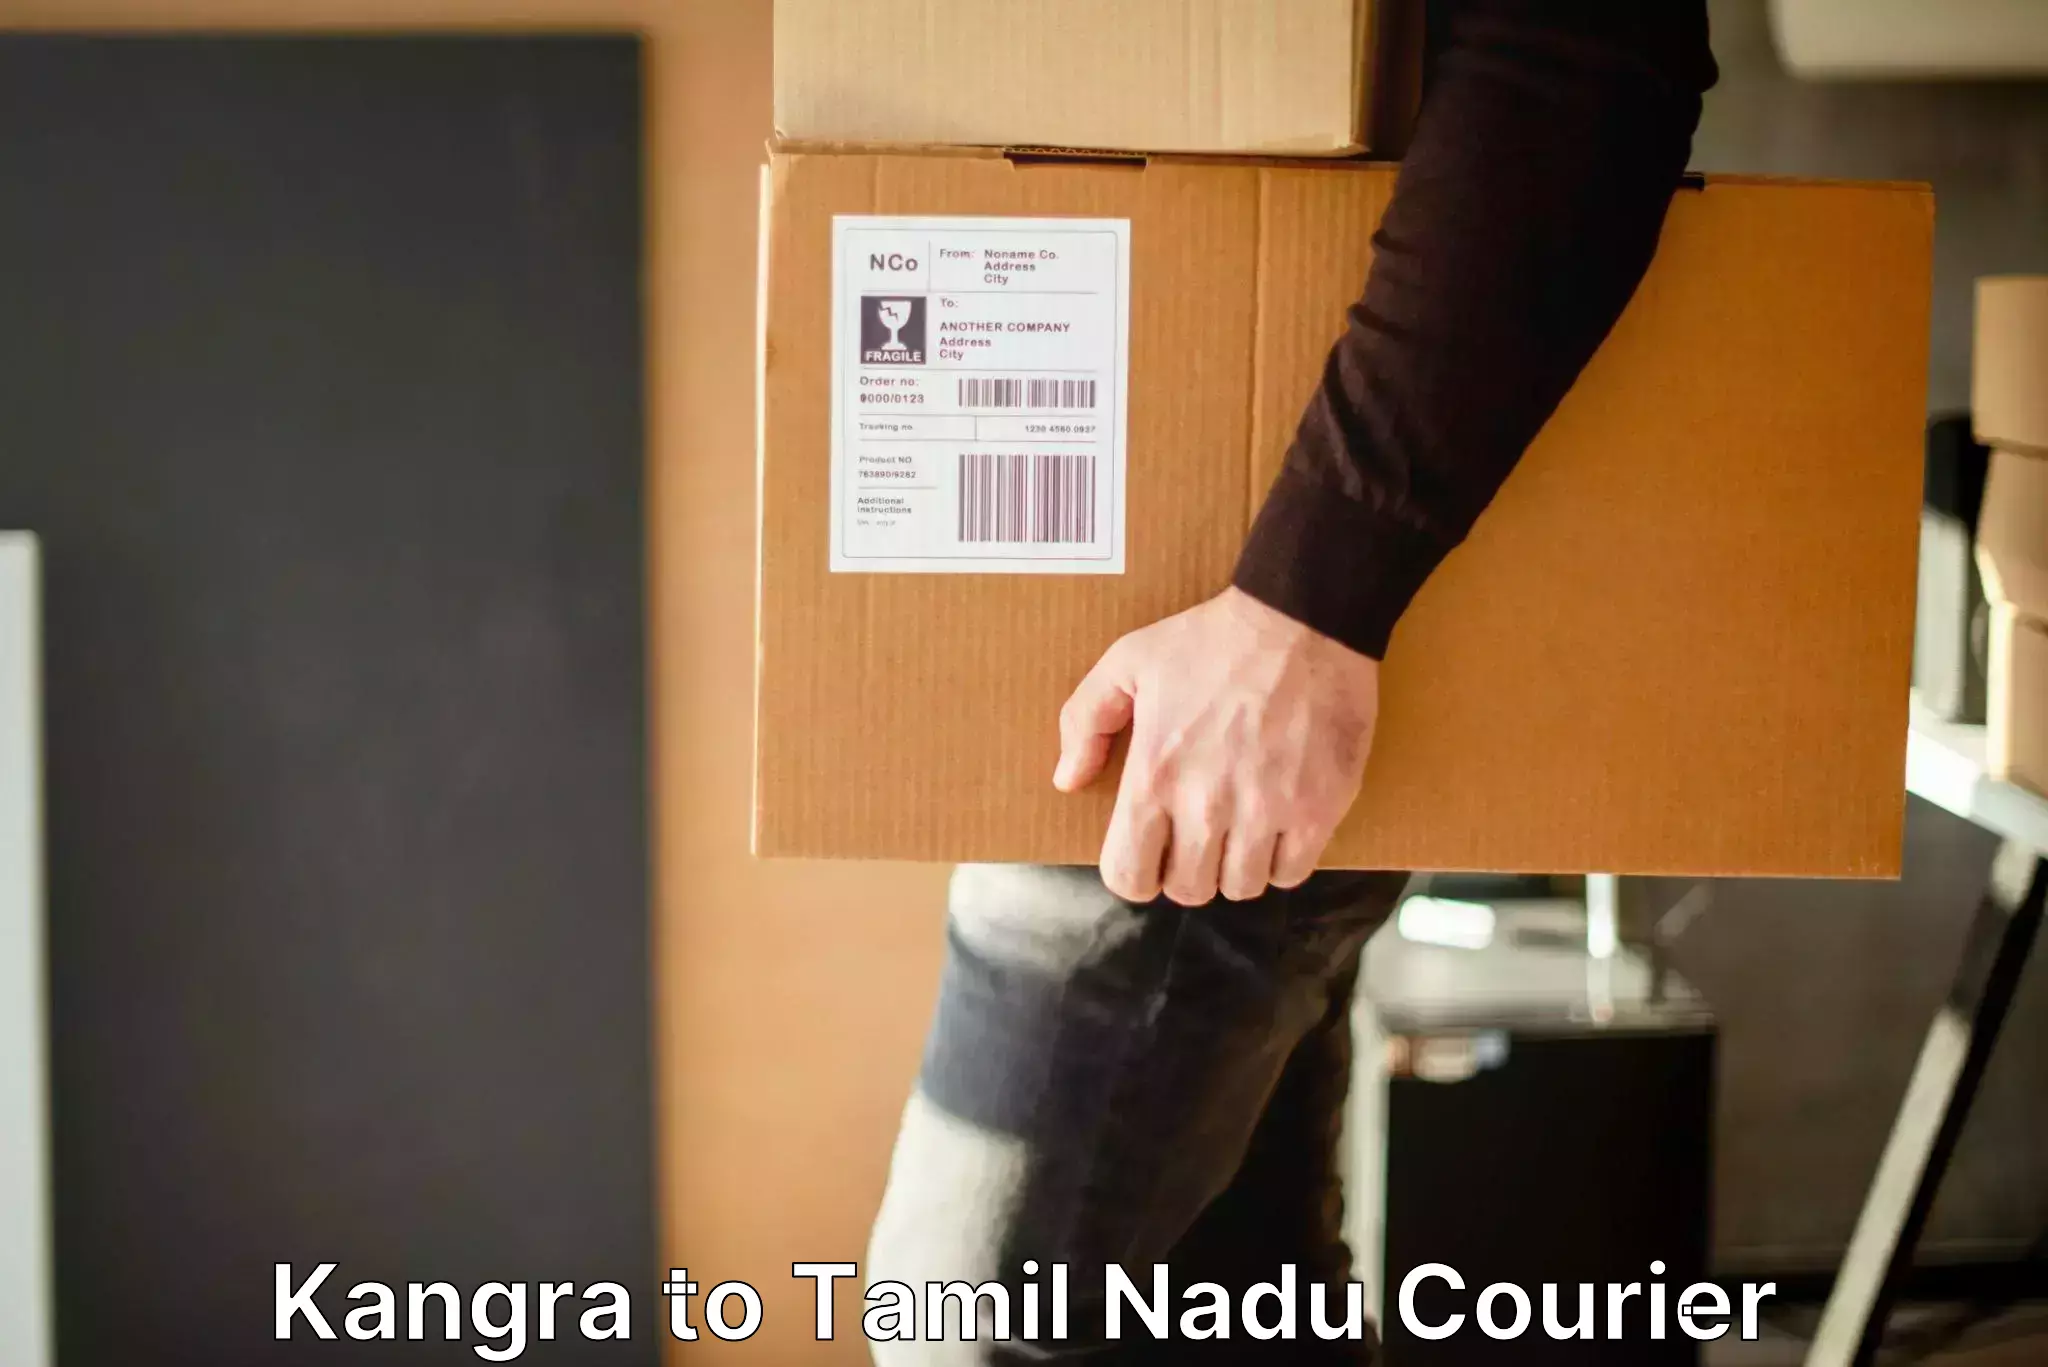 Baggage transport scheduler Kangra to Kulithalai